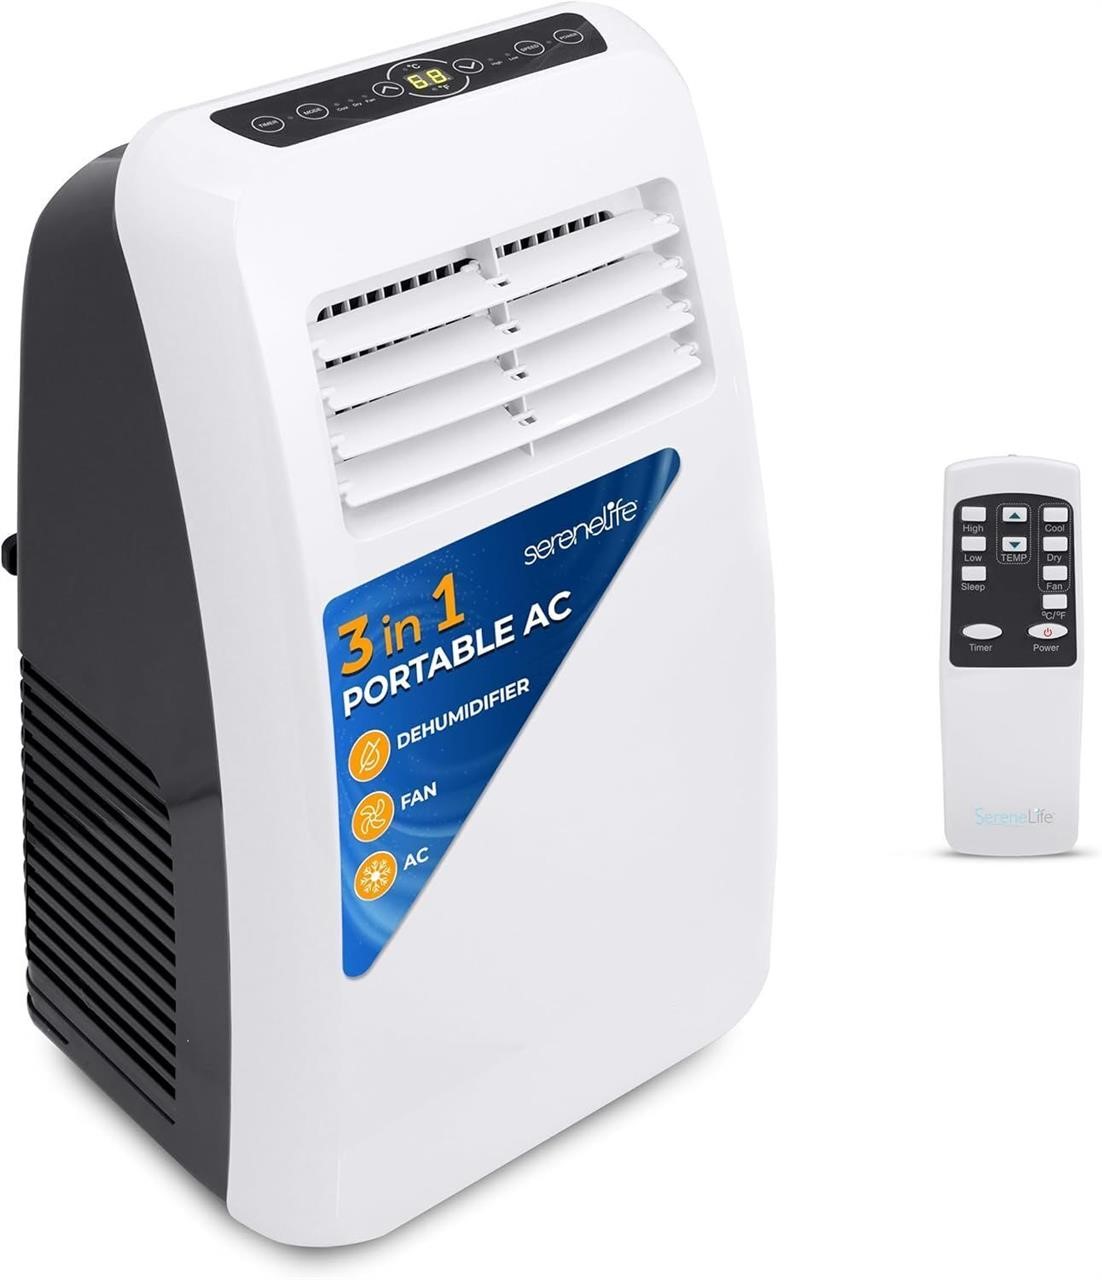 Portable Air Conditioner, SLPAC8